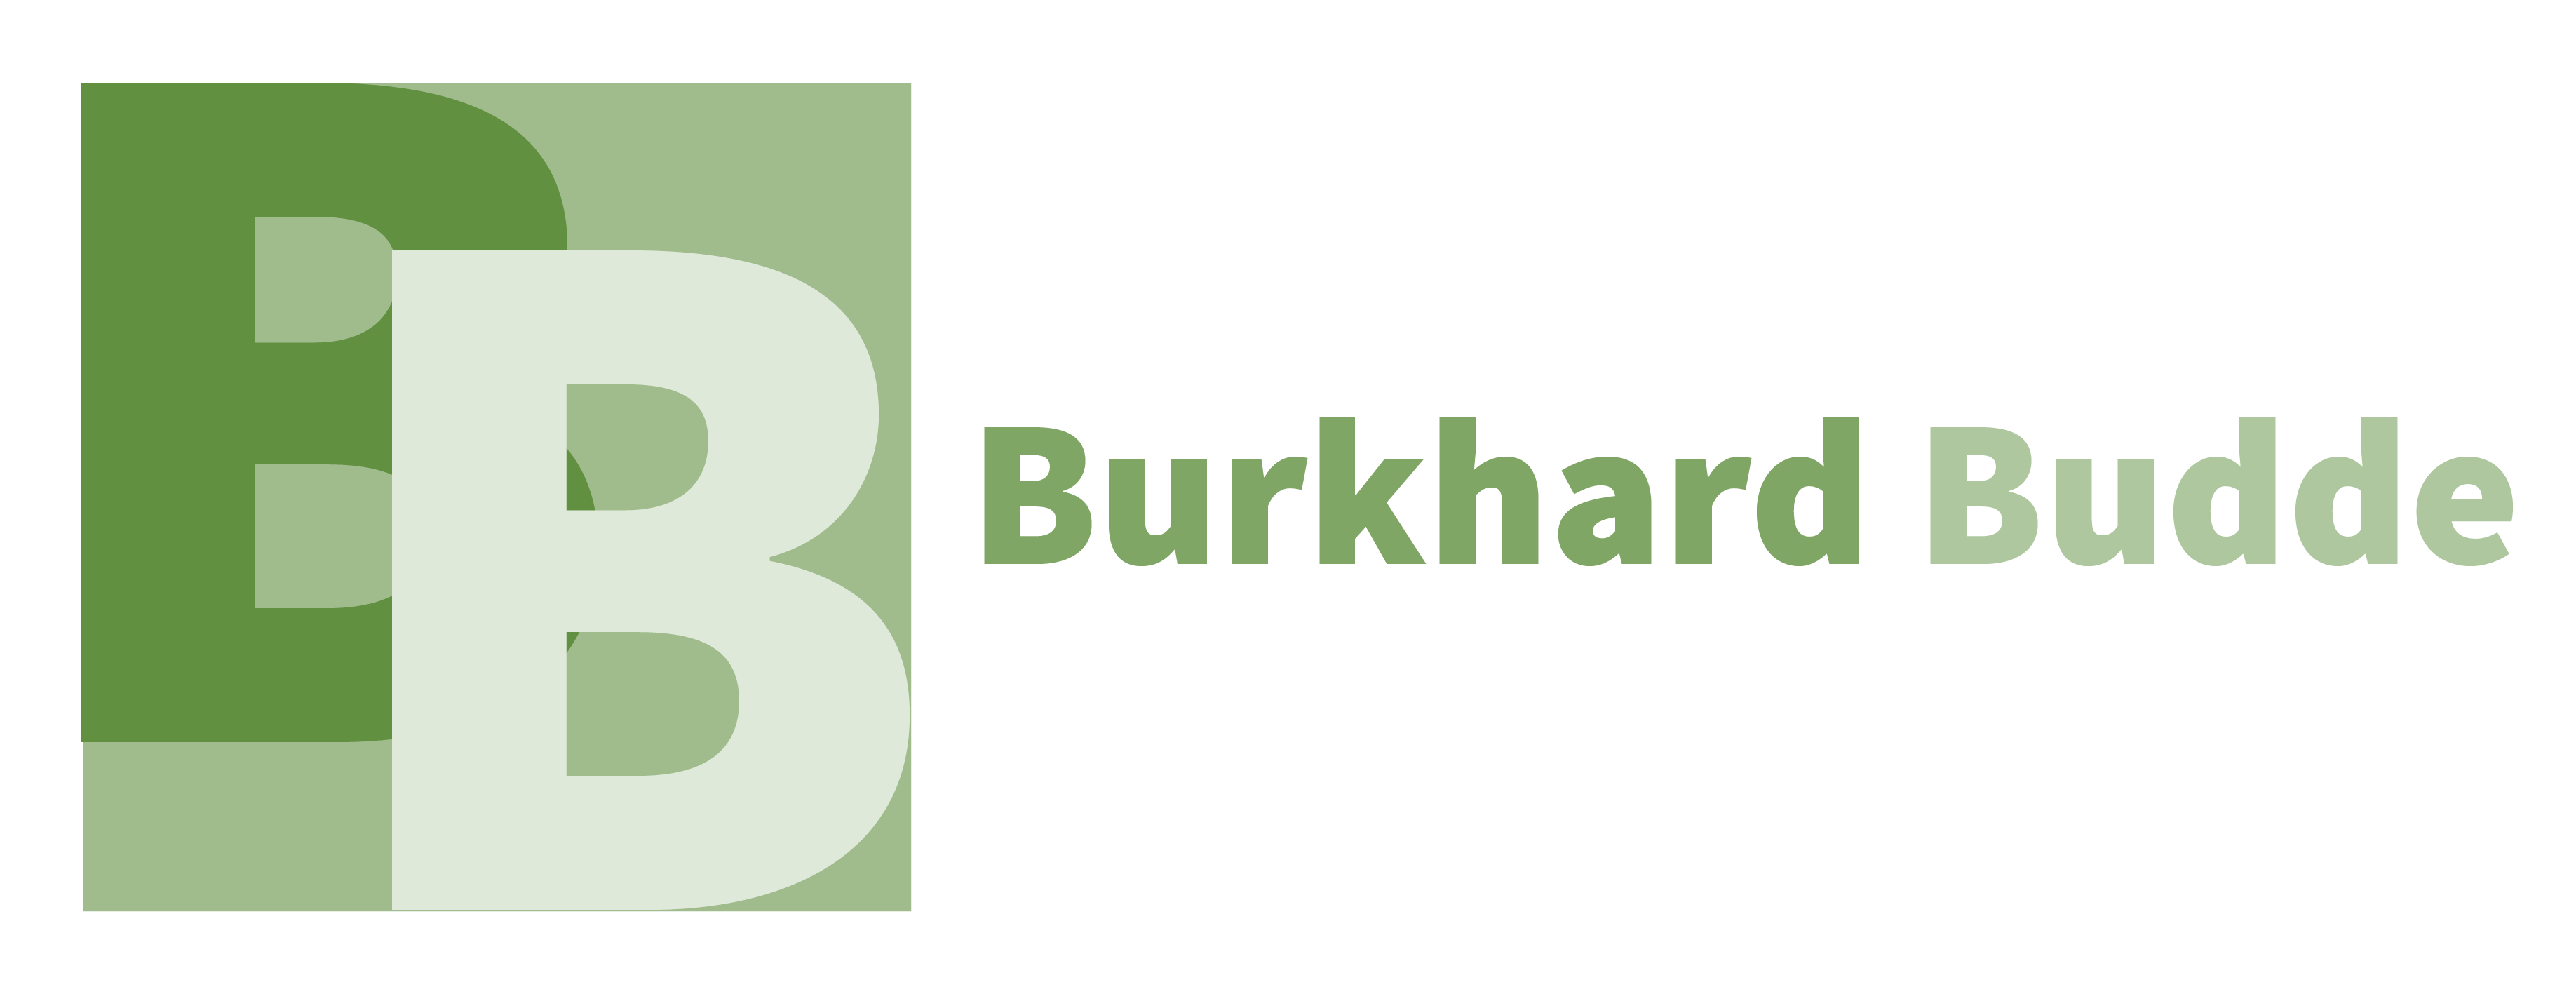 Dr. Burkhard Budde